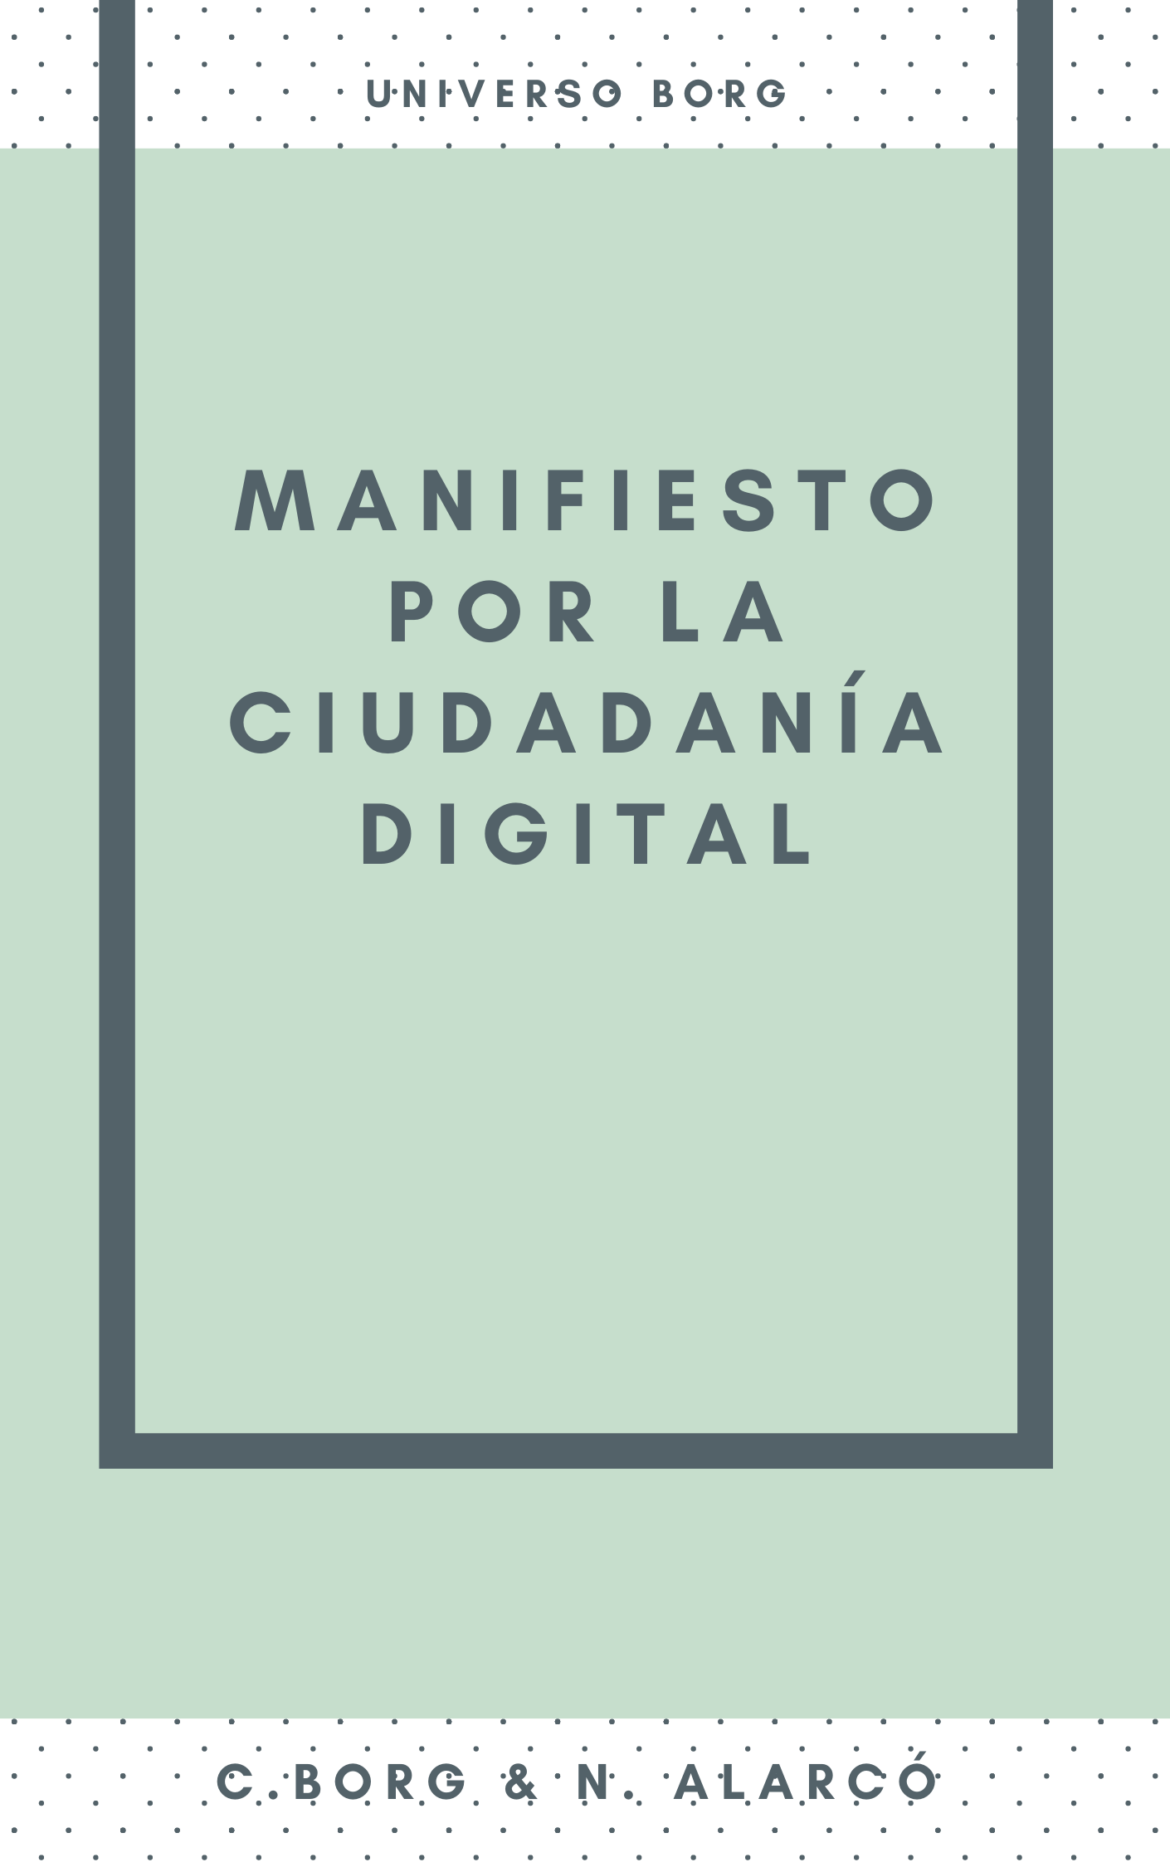 manifiesto-por-la-ciudadania-digital.png